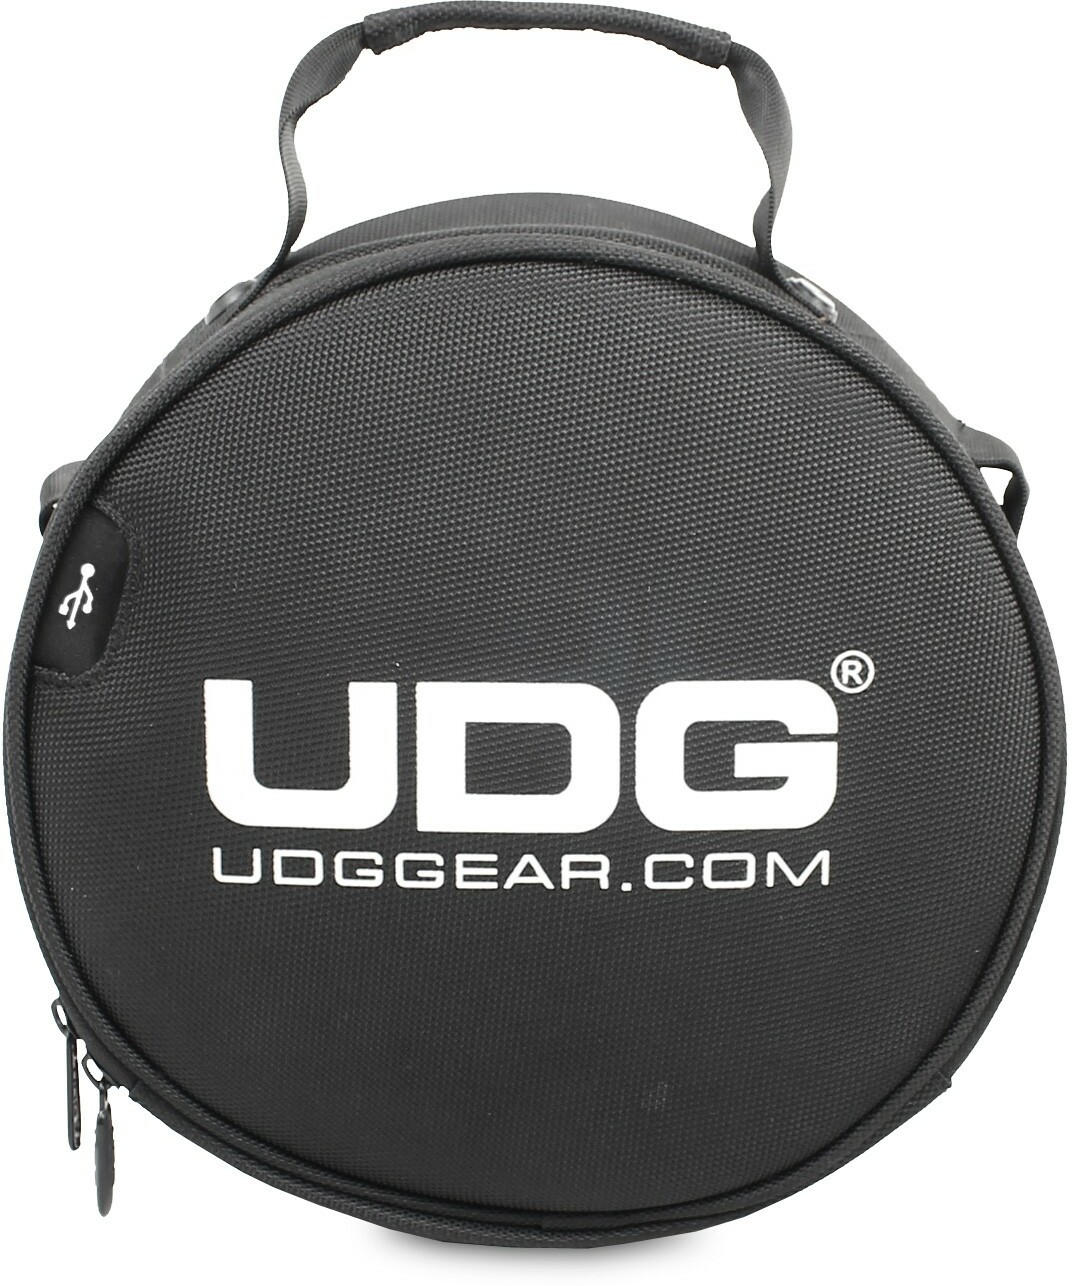 Udg Ultimate Digi Headphone Bag Black - Sac Transport Trolley Dj - Main picture